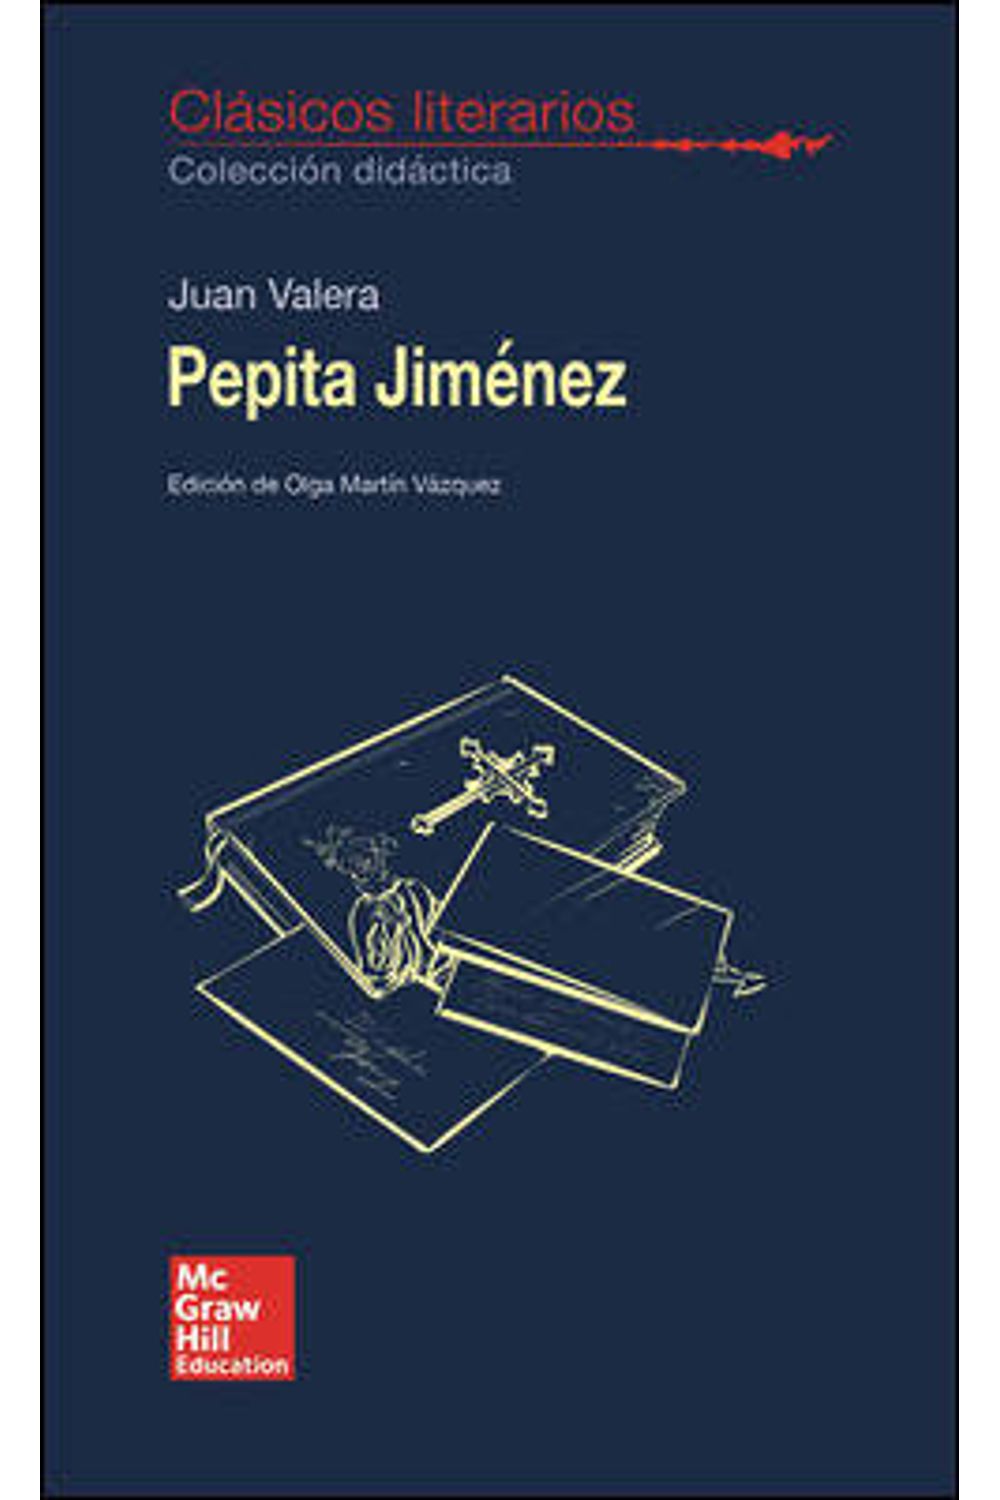 Pepita Jimenez Clasicos Literarios 2018